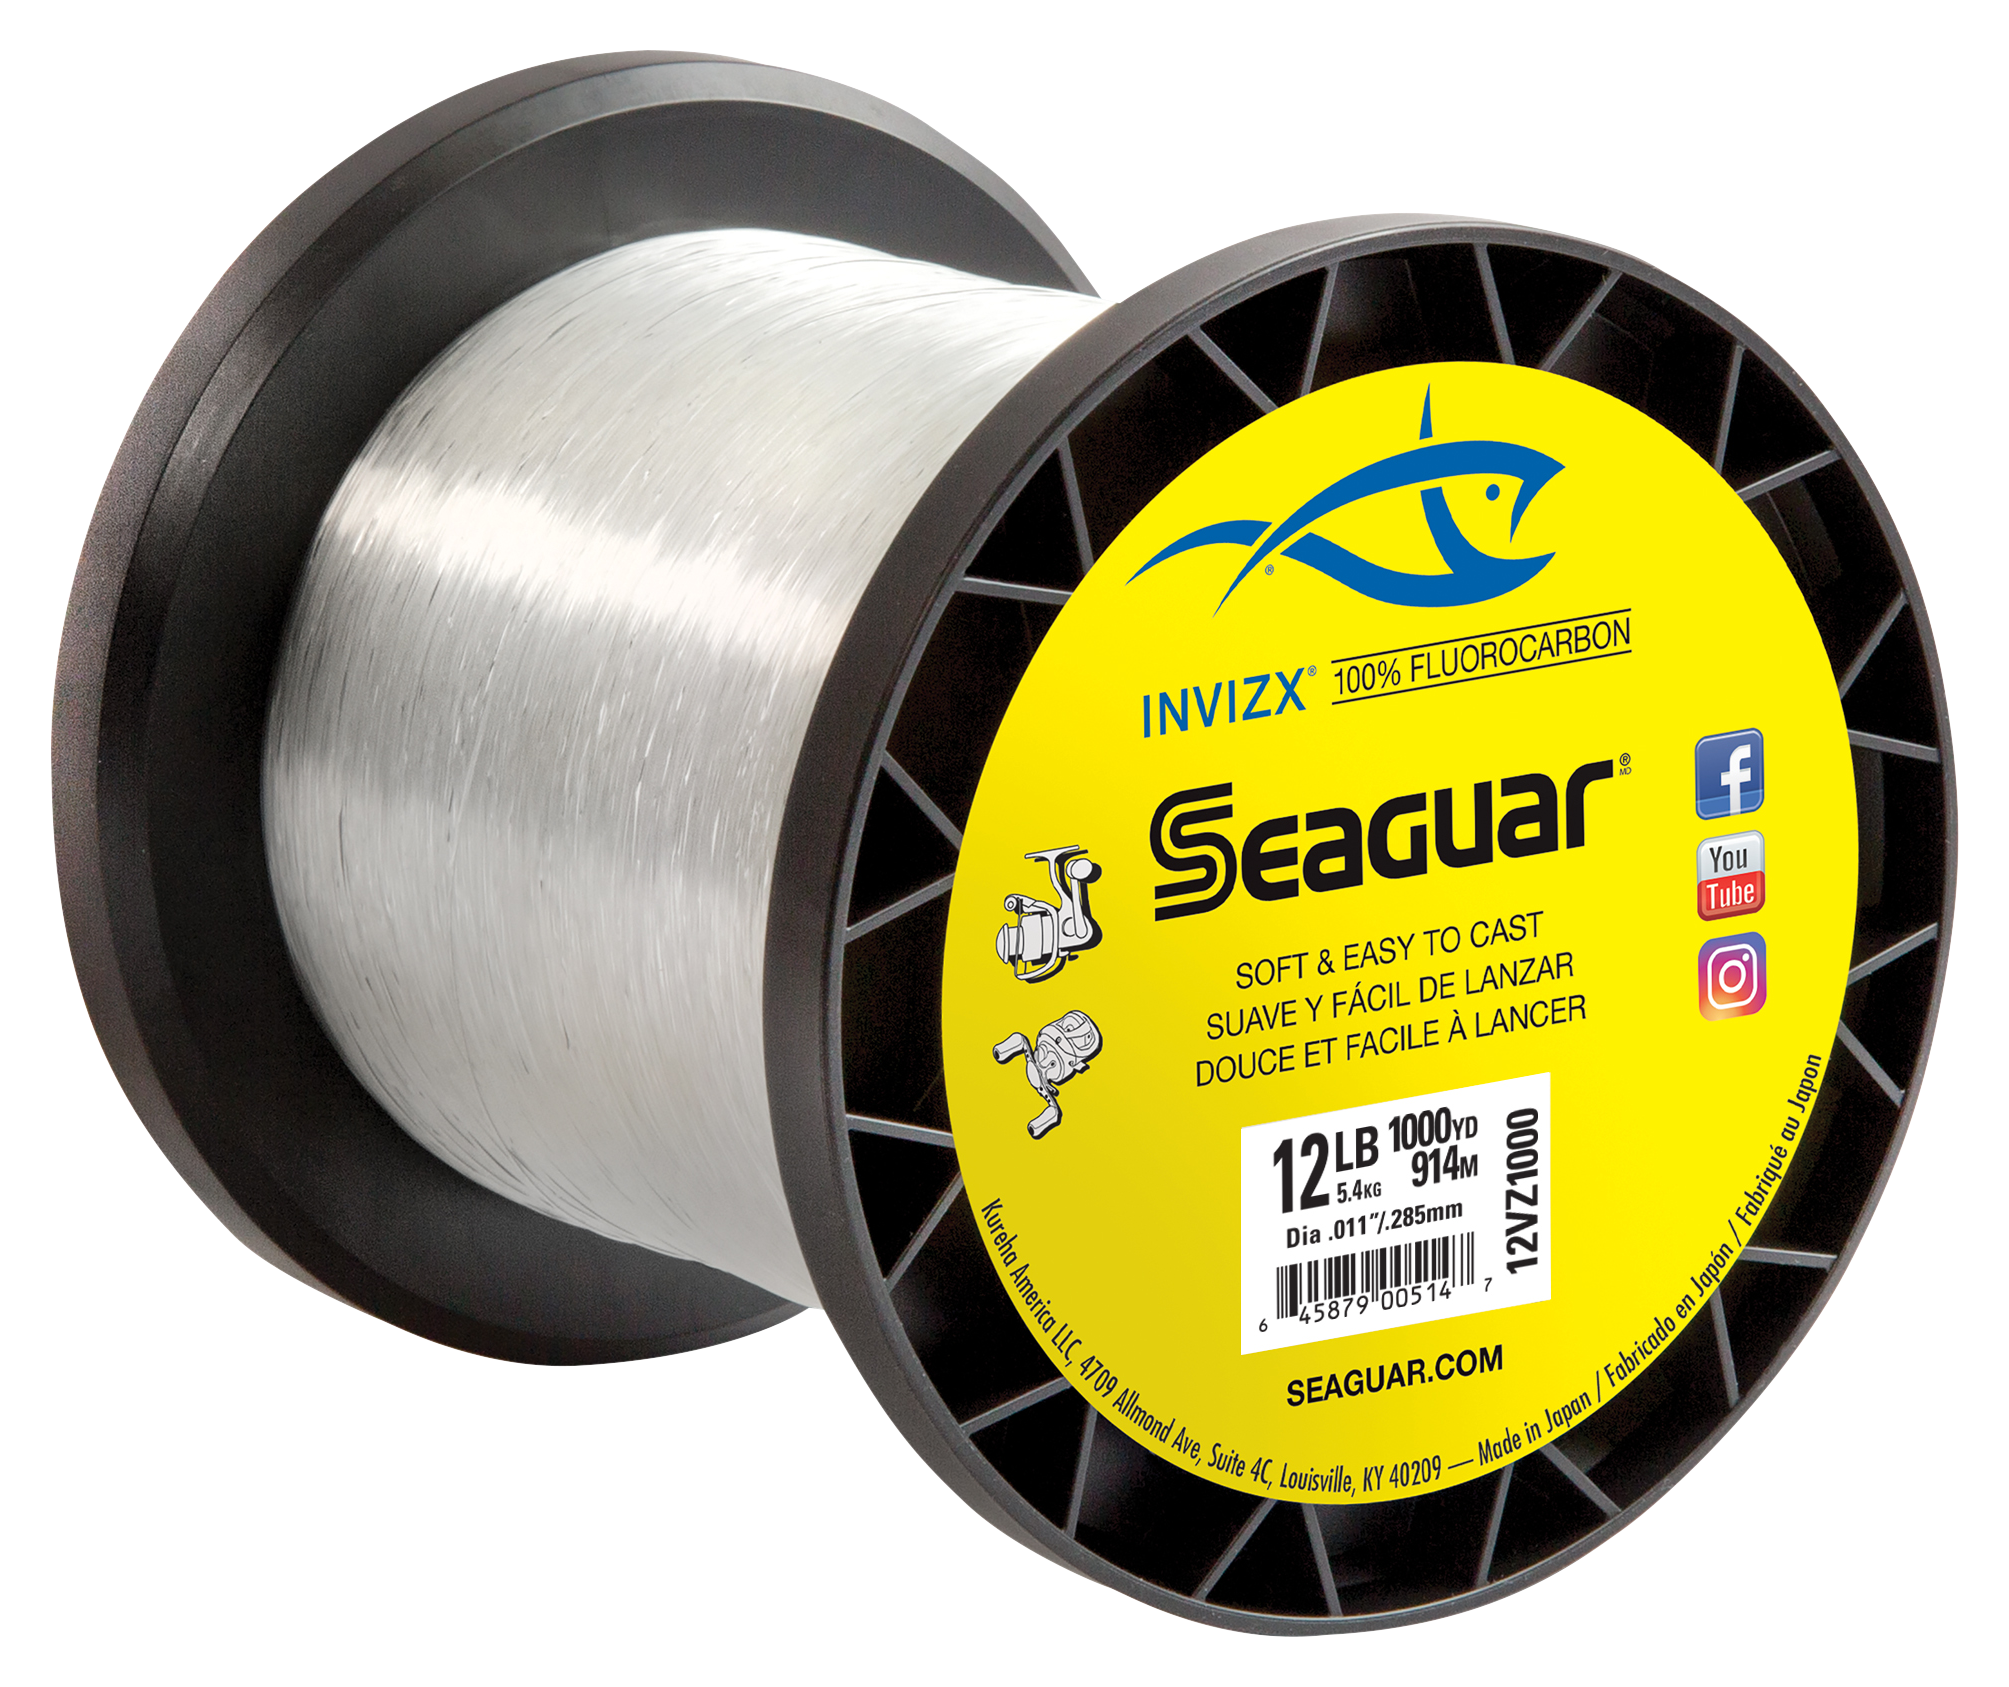 Seaguar Fluorocarbon Leader 20lb Test 25 Meter Coil